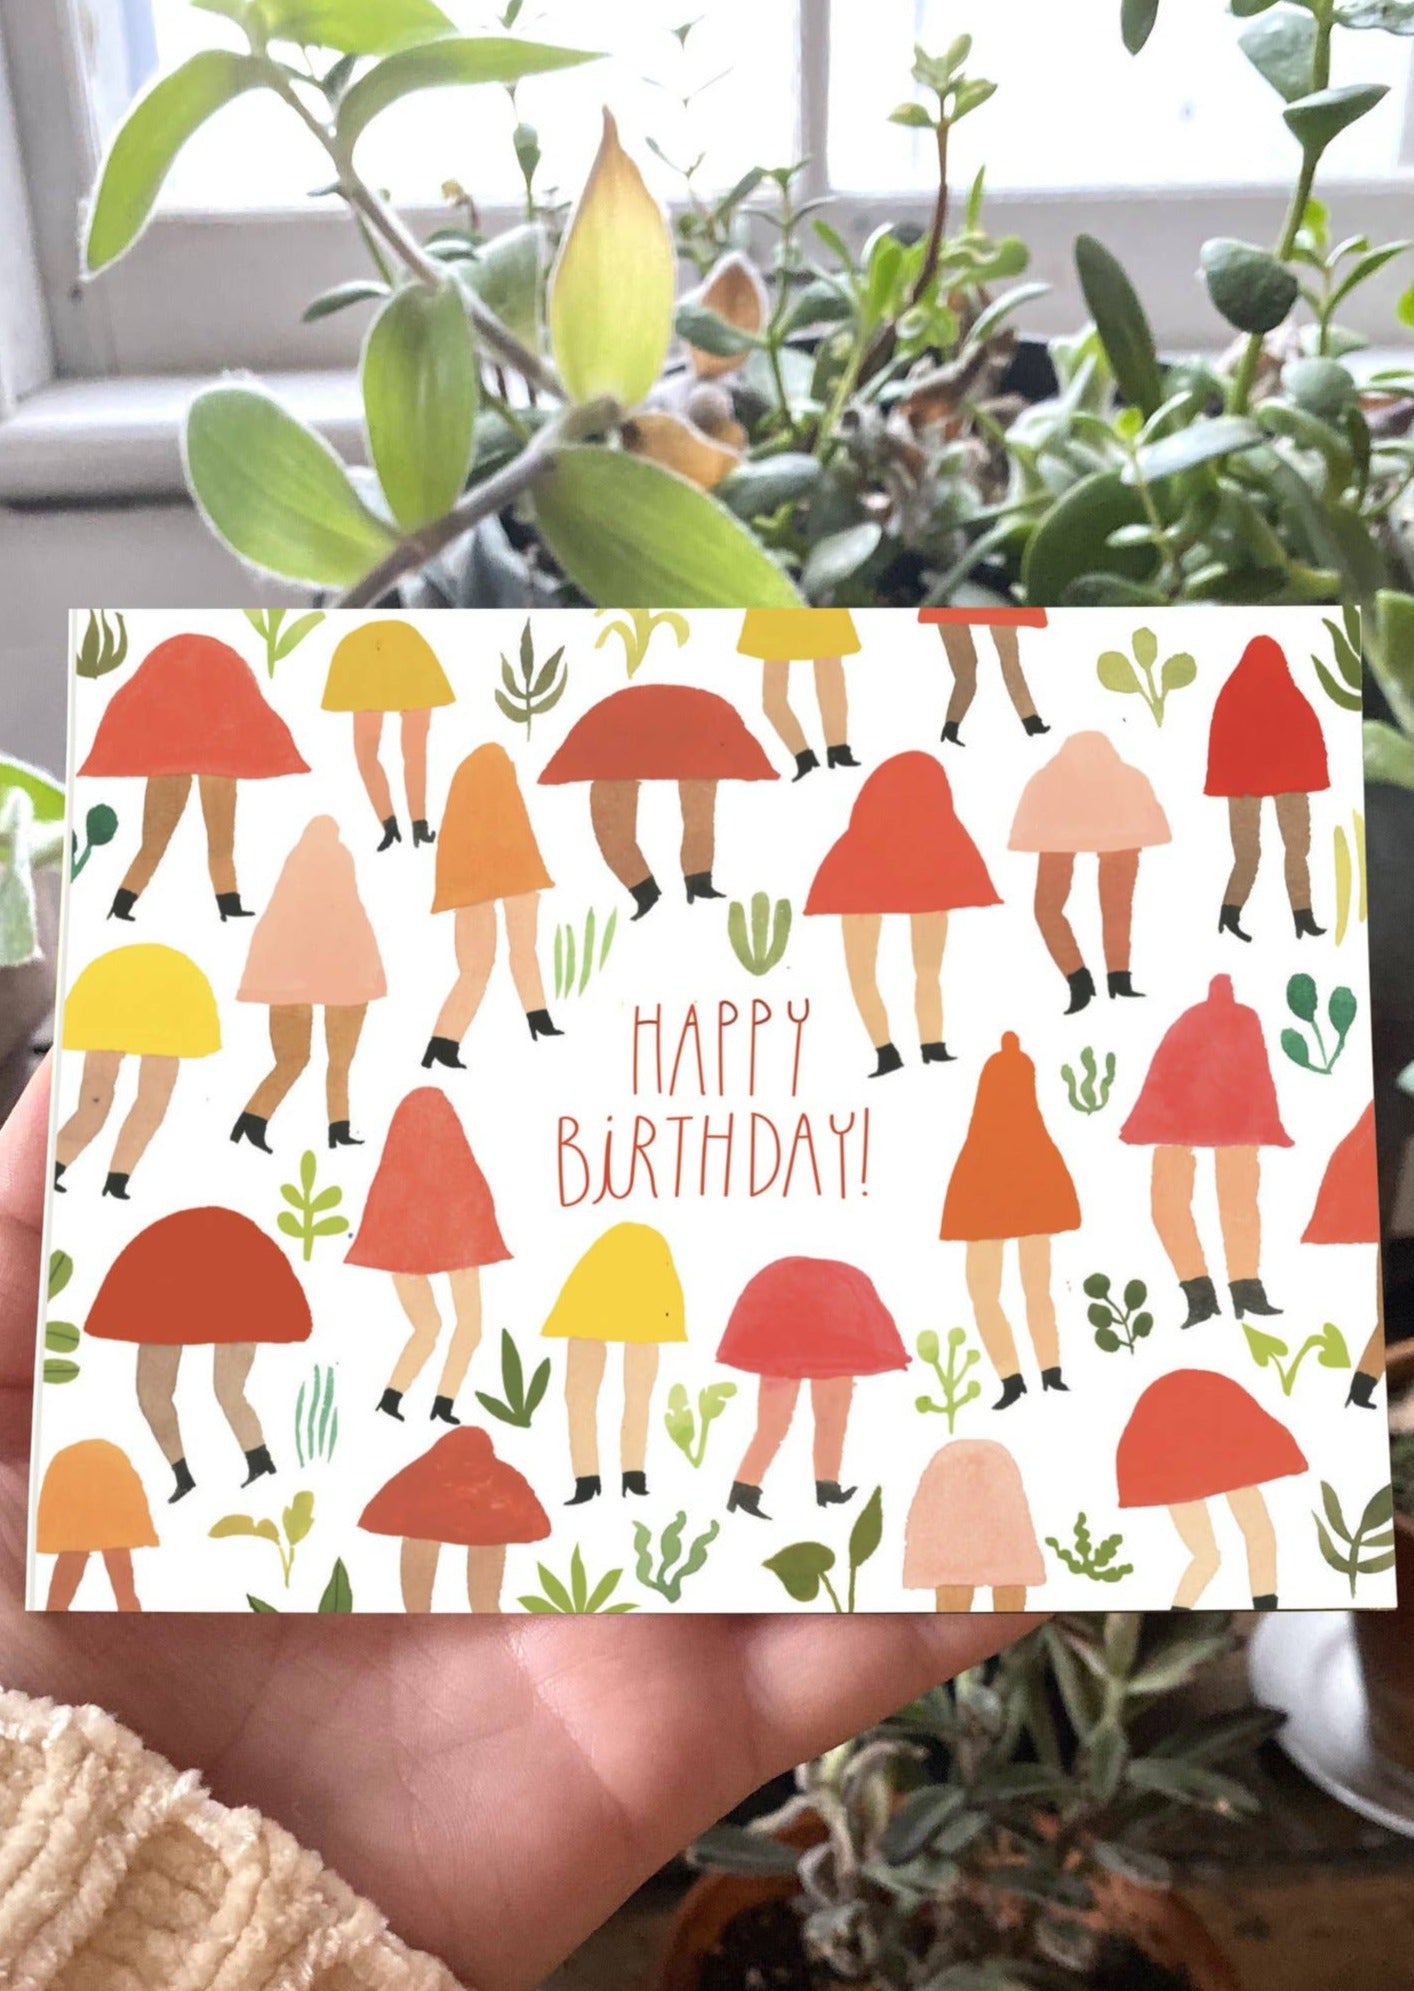 Happy Birthday Mushroom People Card